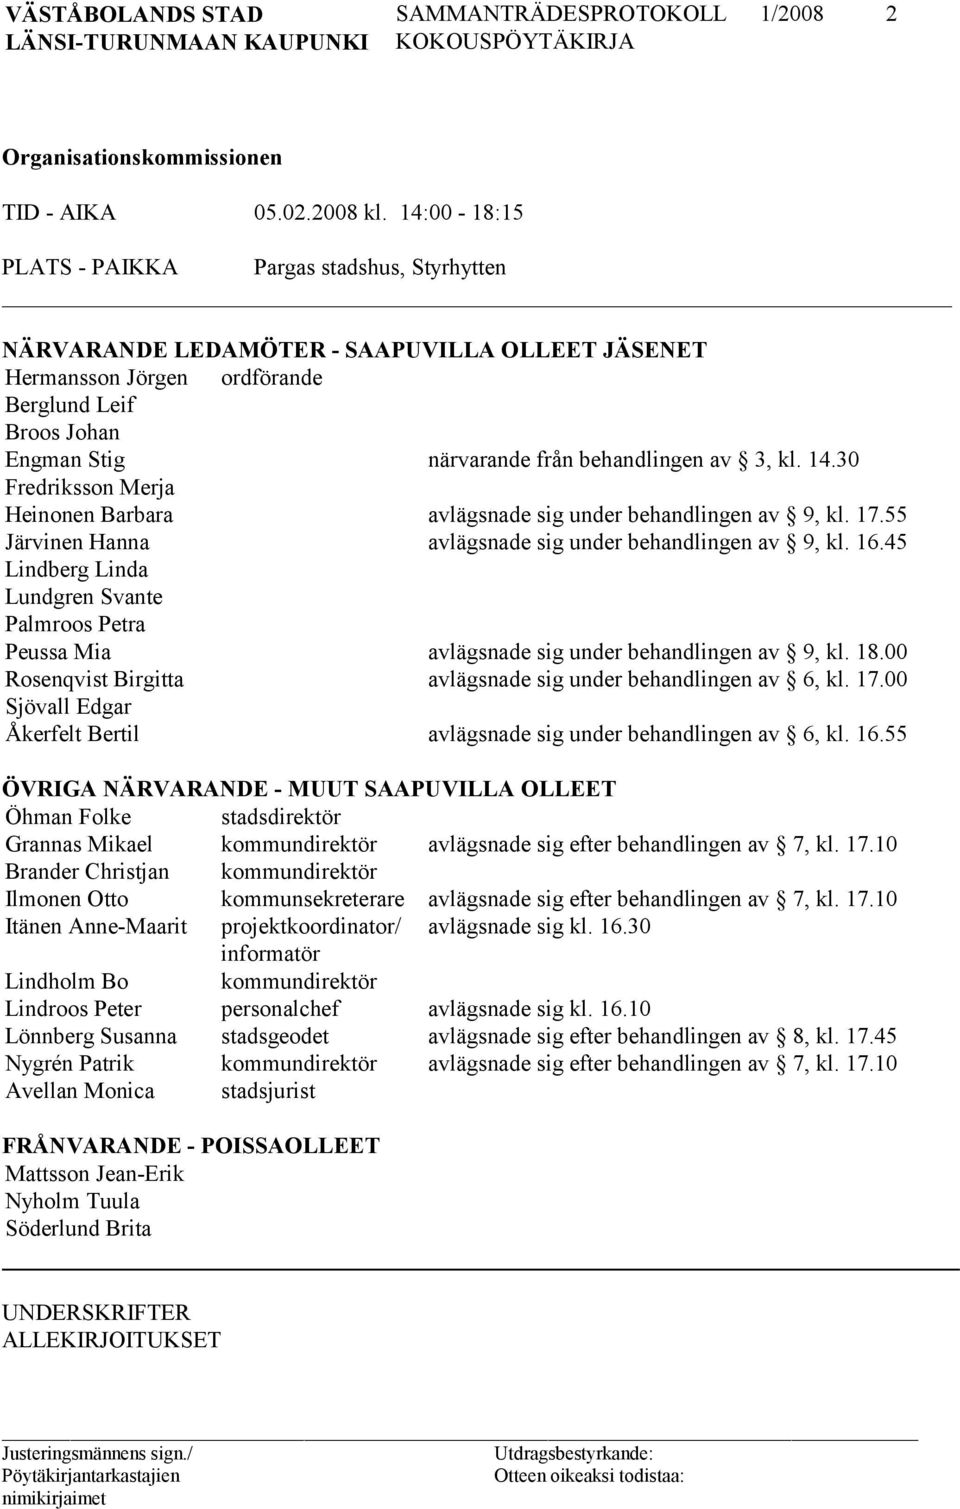 av 3, kl. 14.30 Fredriksson Merja Heinonen Barbara avlägsnade sig under behandlingen av 9, kl. 17.55 Järvinen Hanna avlägsnade sig under behandlingen av 9, kl. 16.